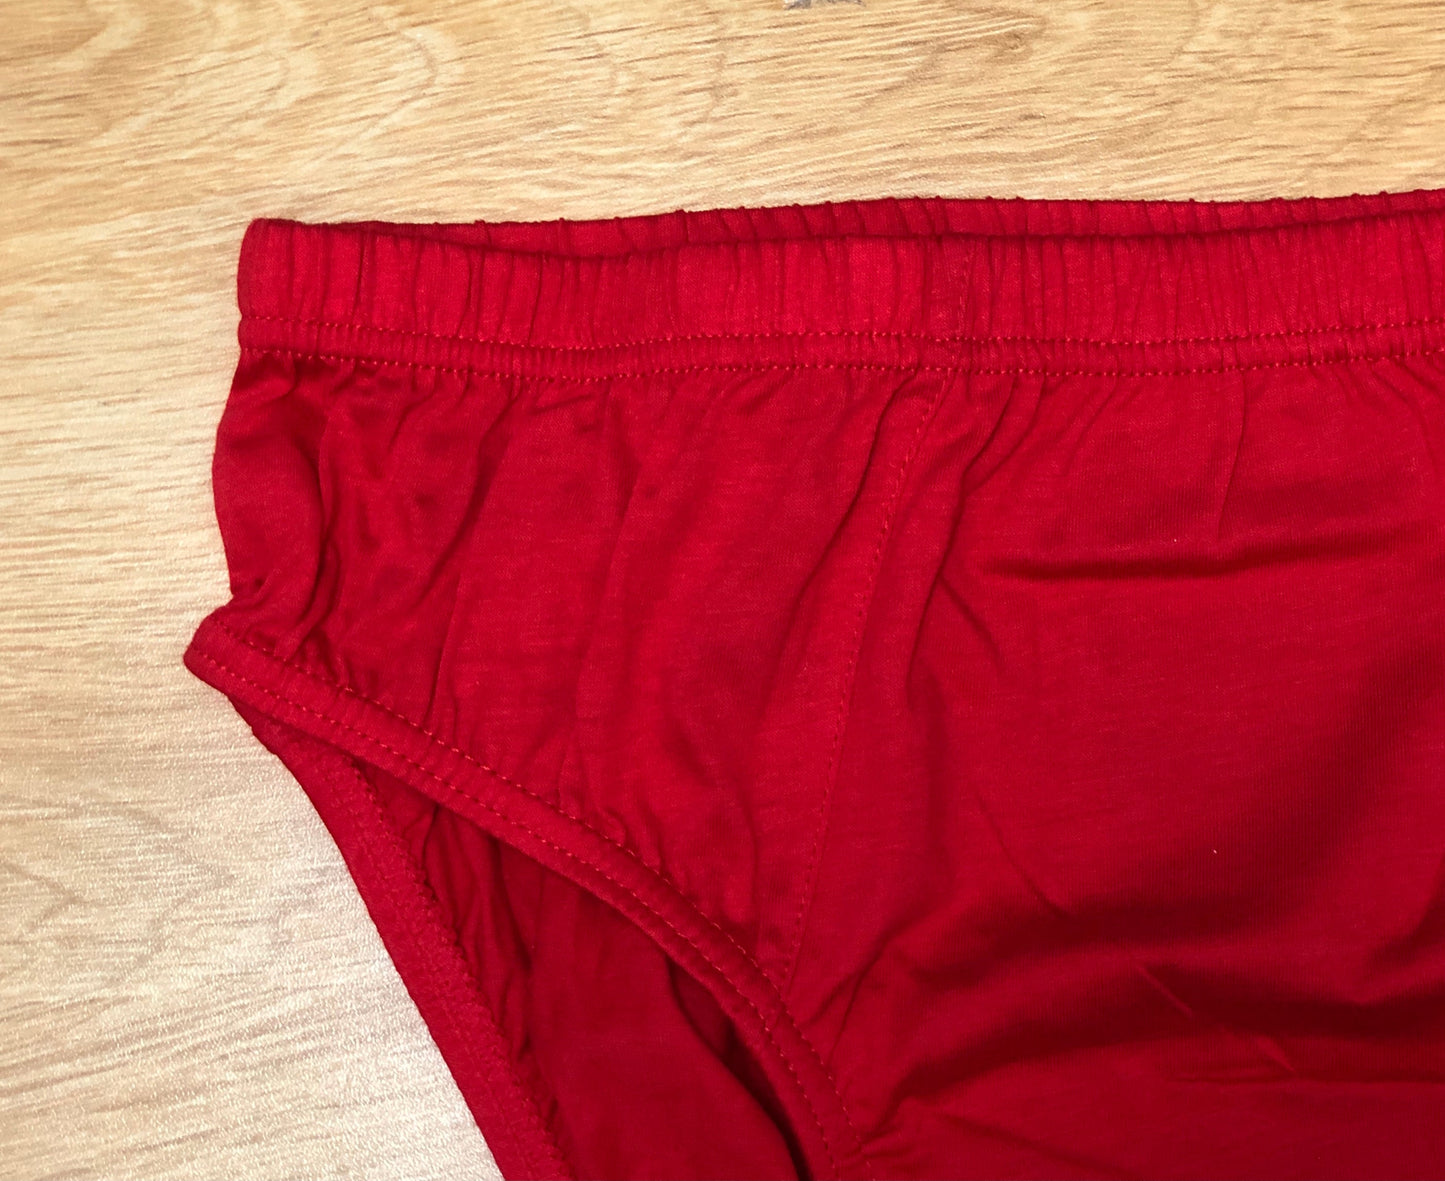 02款男裝三角型內褲- 紅色